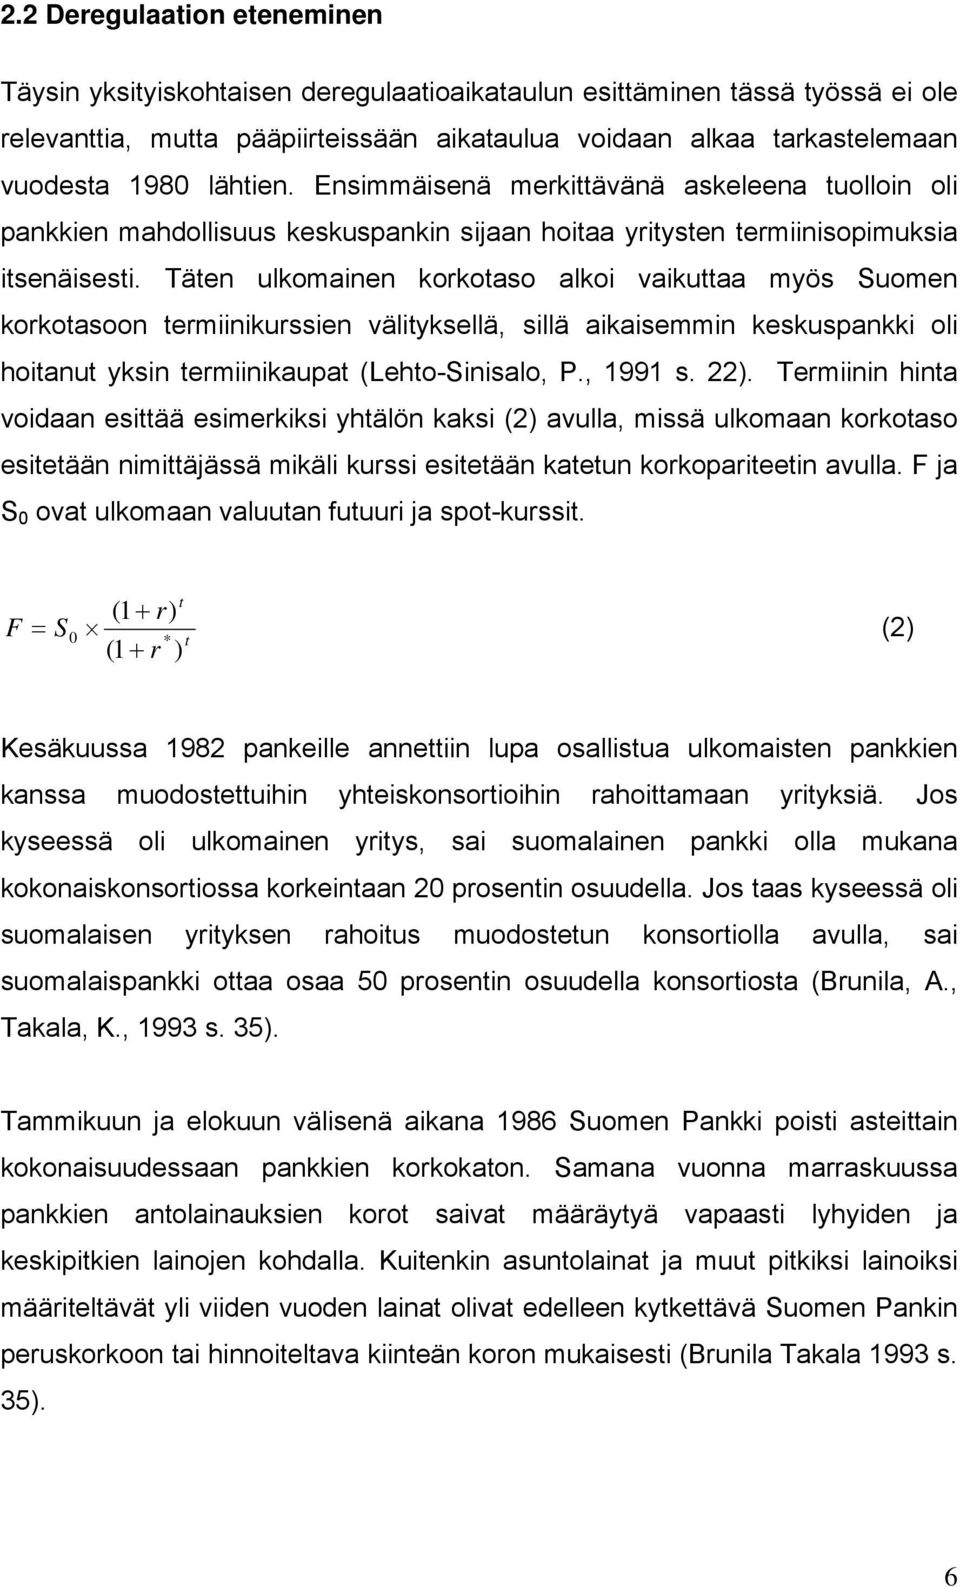 Täten ulkomainen korkotaso alkoi vaikuttaa myös Suomen korkotasoon termiinikurssien välityksellä, sillä aikaisemmin keskuspankki oli hoitanut yksin termiinikaupat (Lehto-Sinisalo, P., 1991 s. 22).